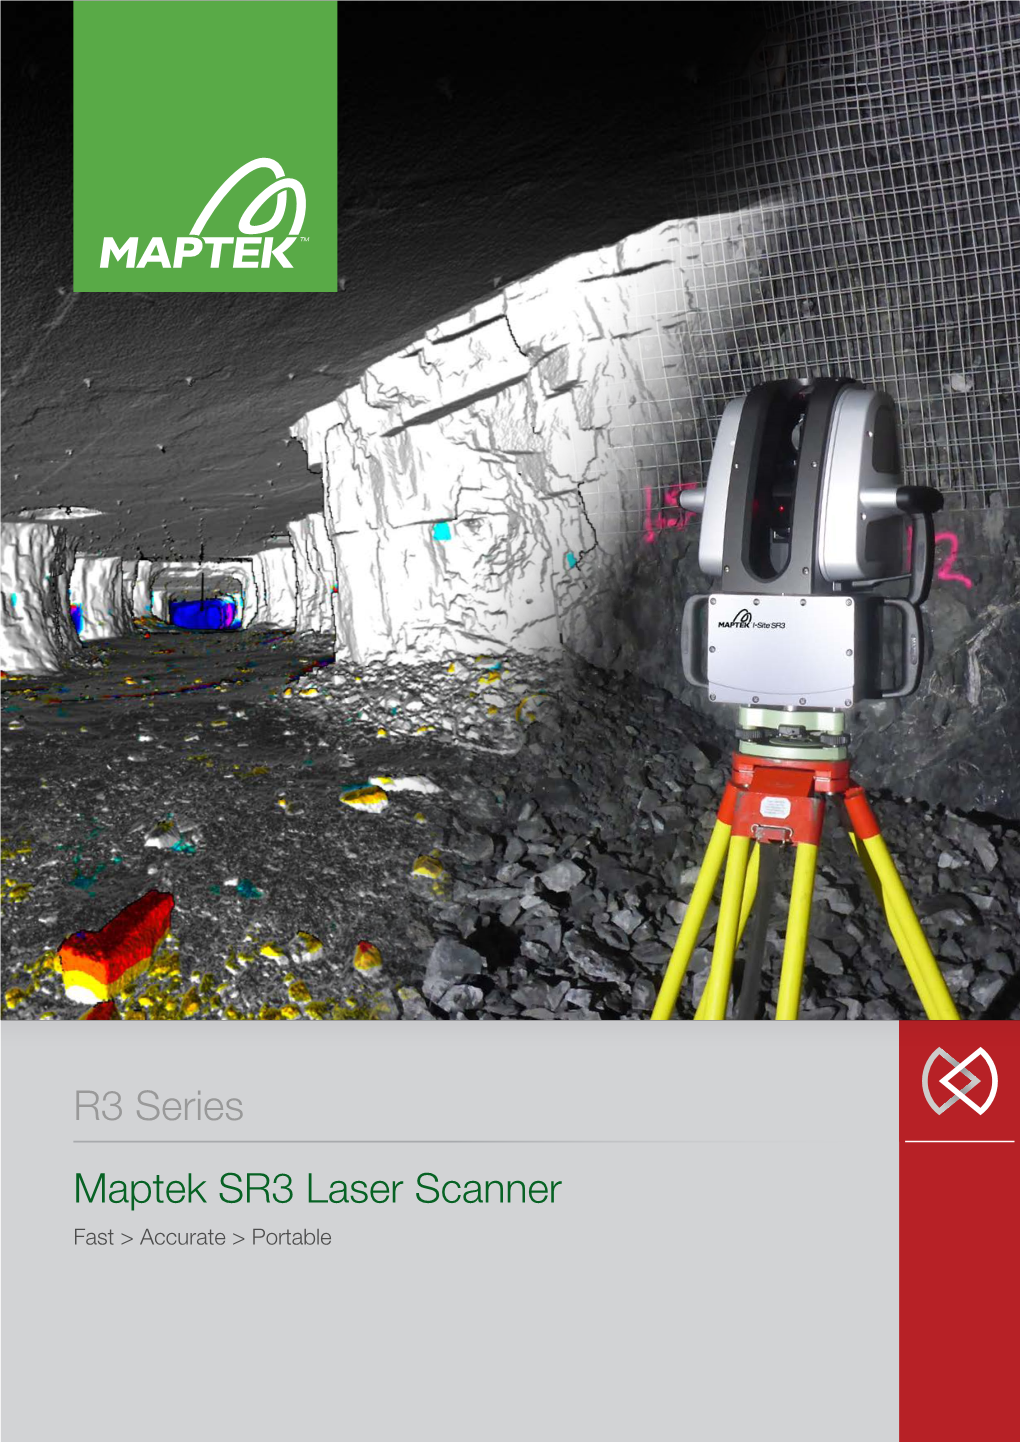 Maptek SR3 Laser Scanner R3 Series